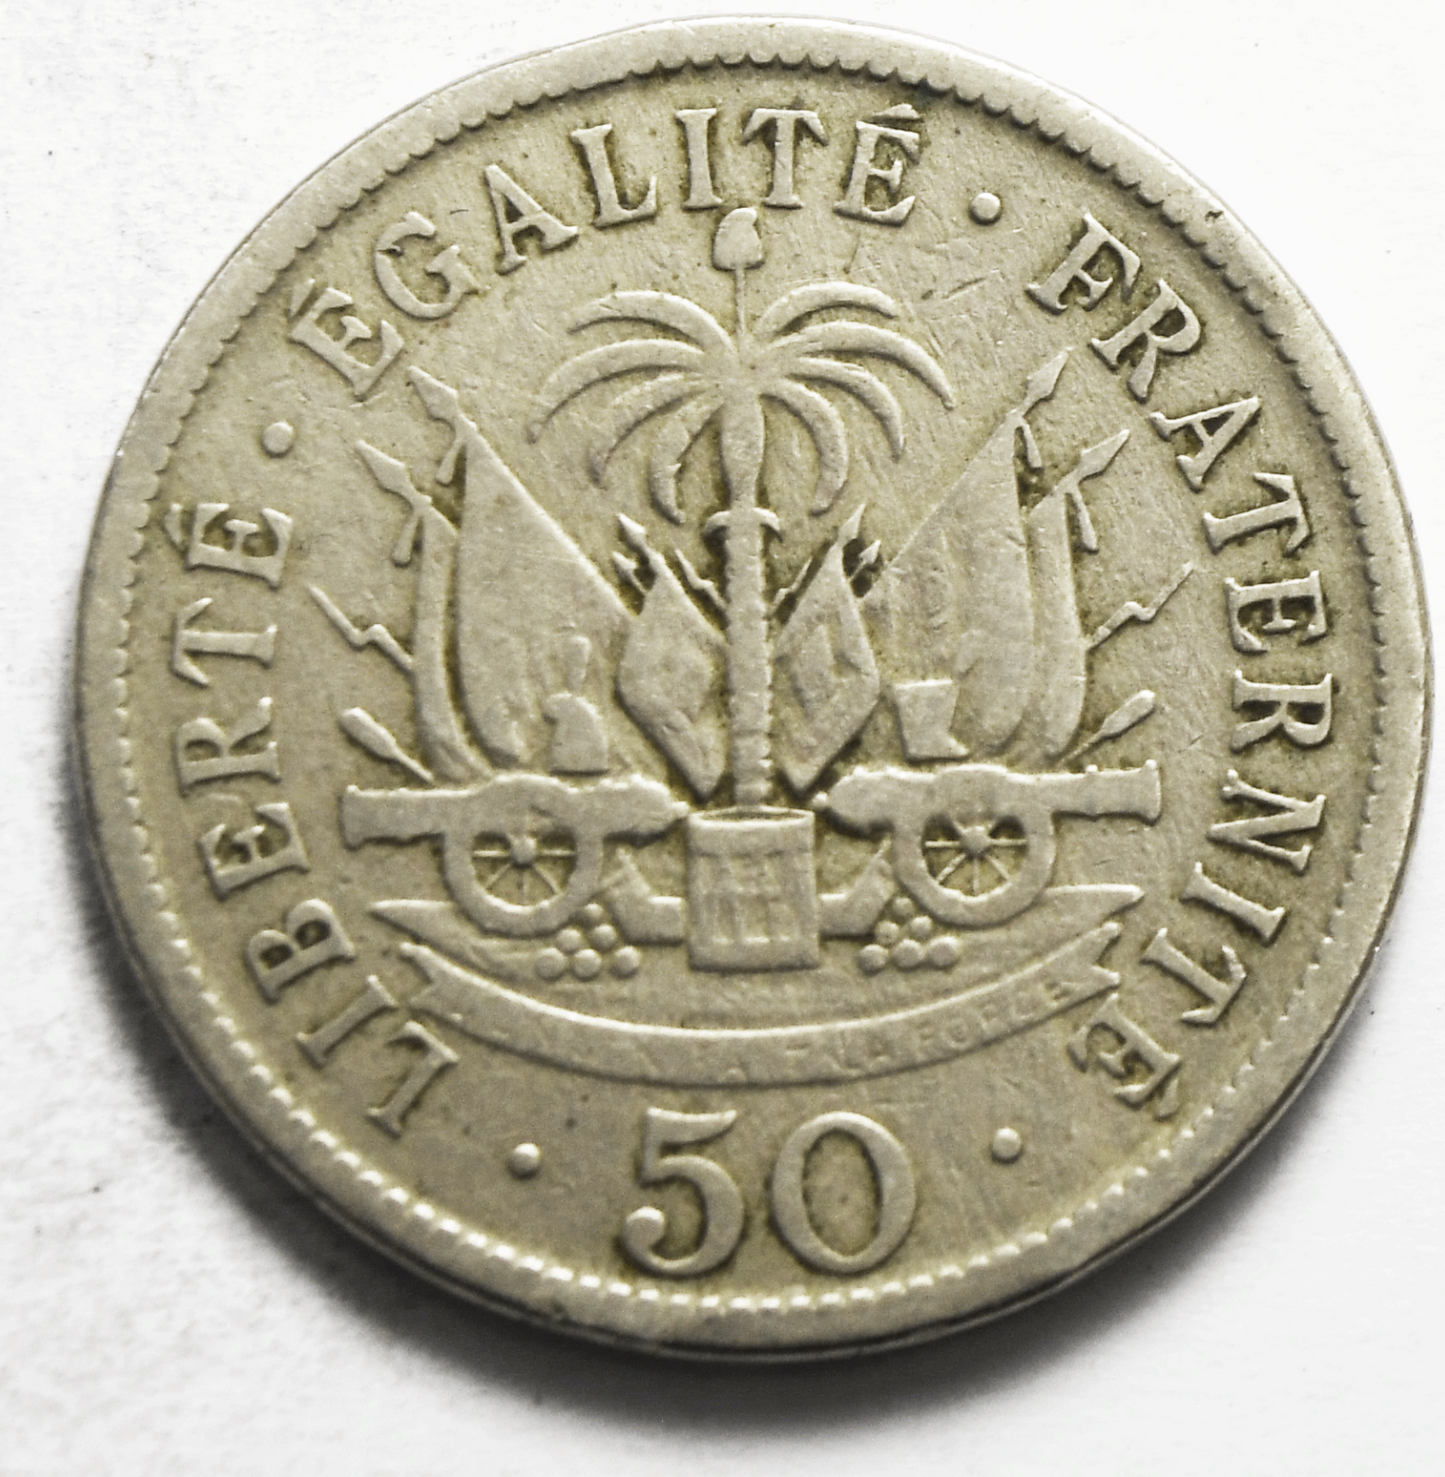 1908 Haiti 50 Centimes KM# 56 Copper Nickel Coin